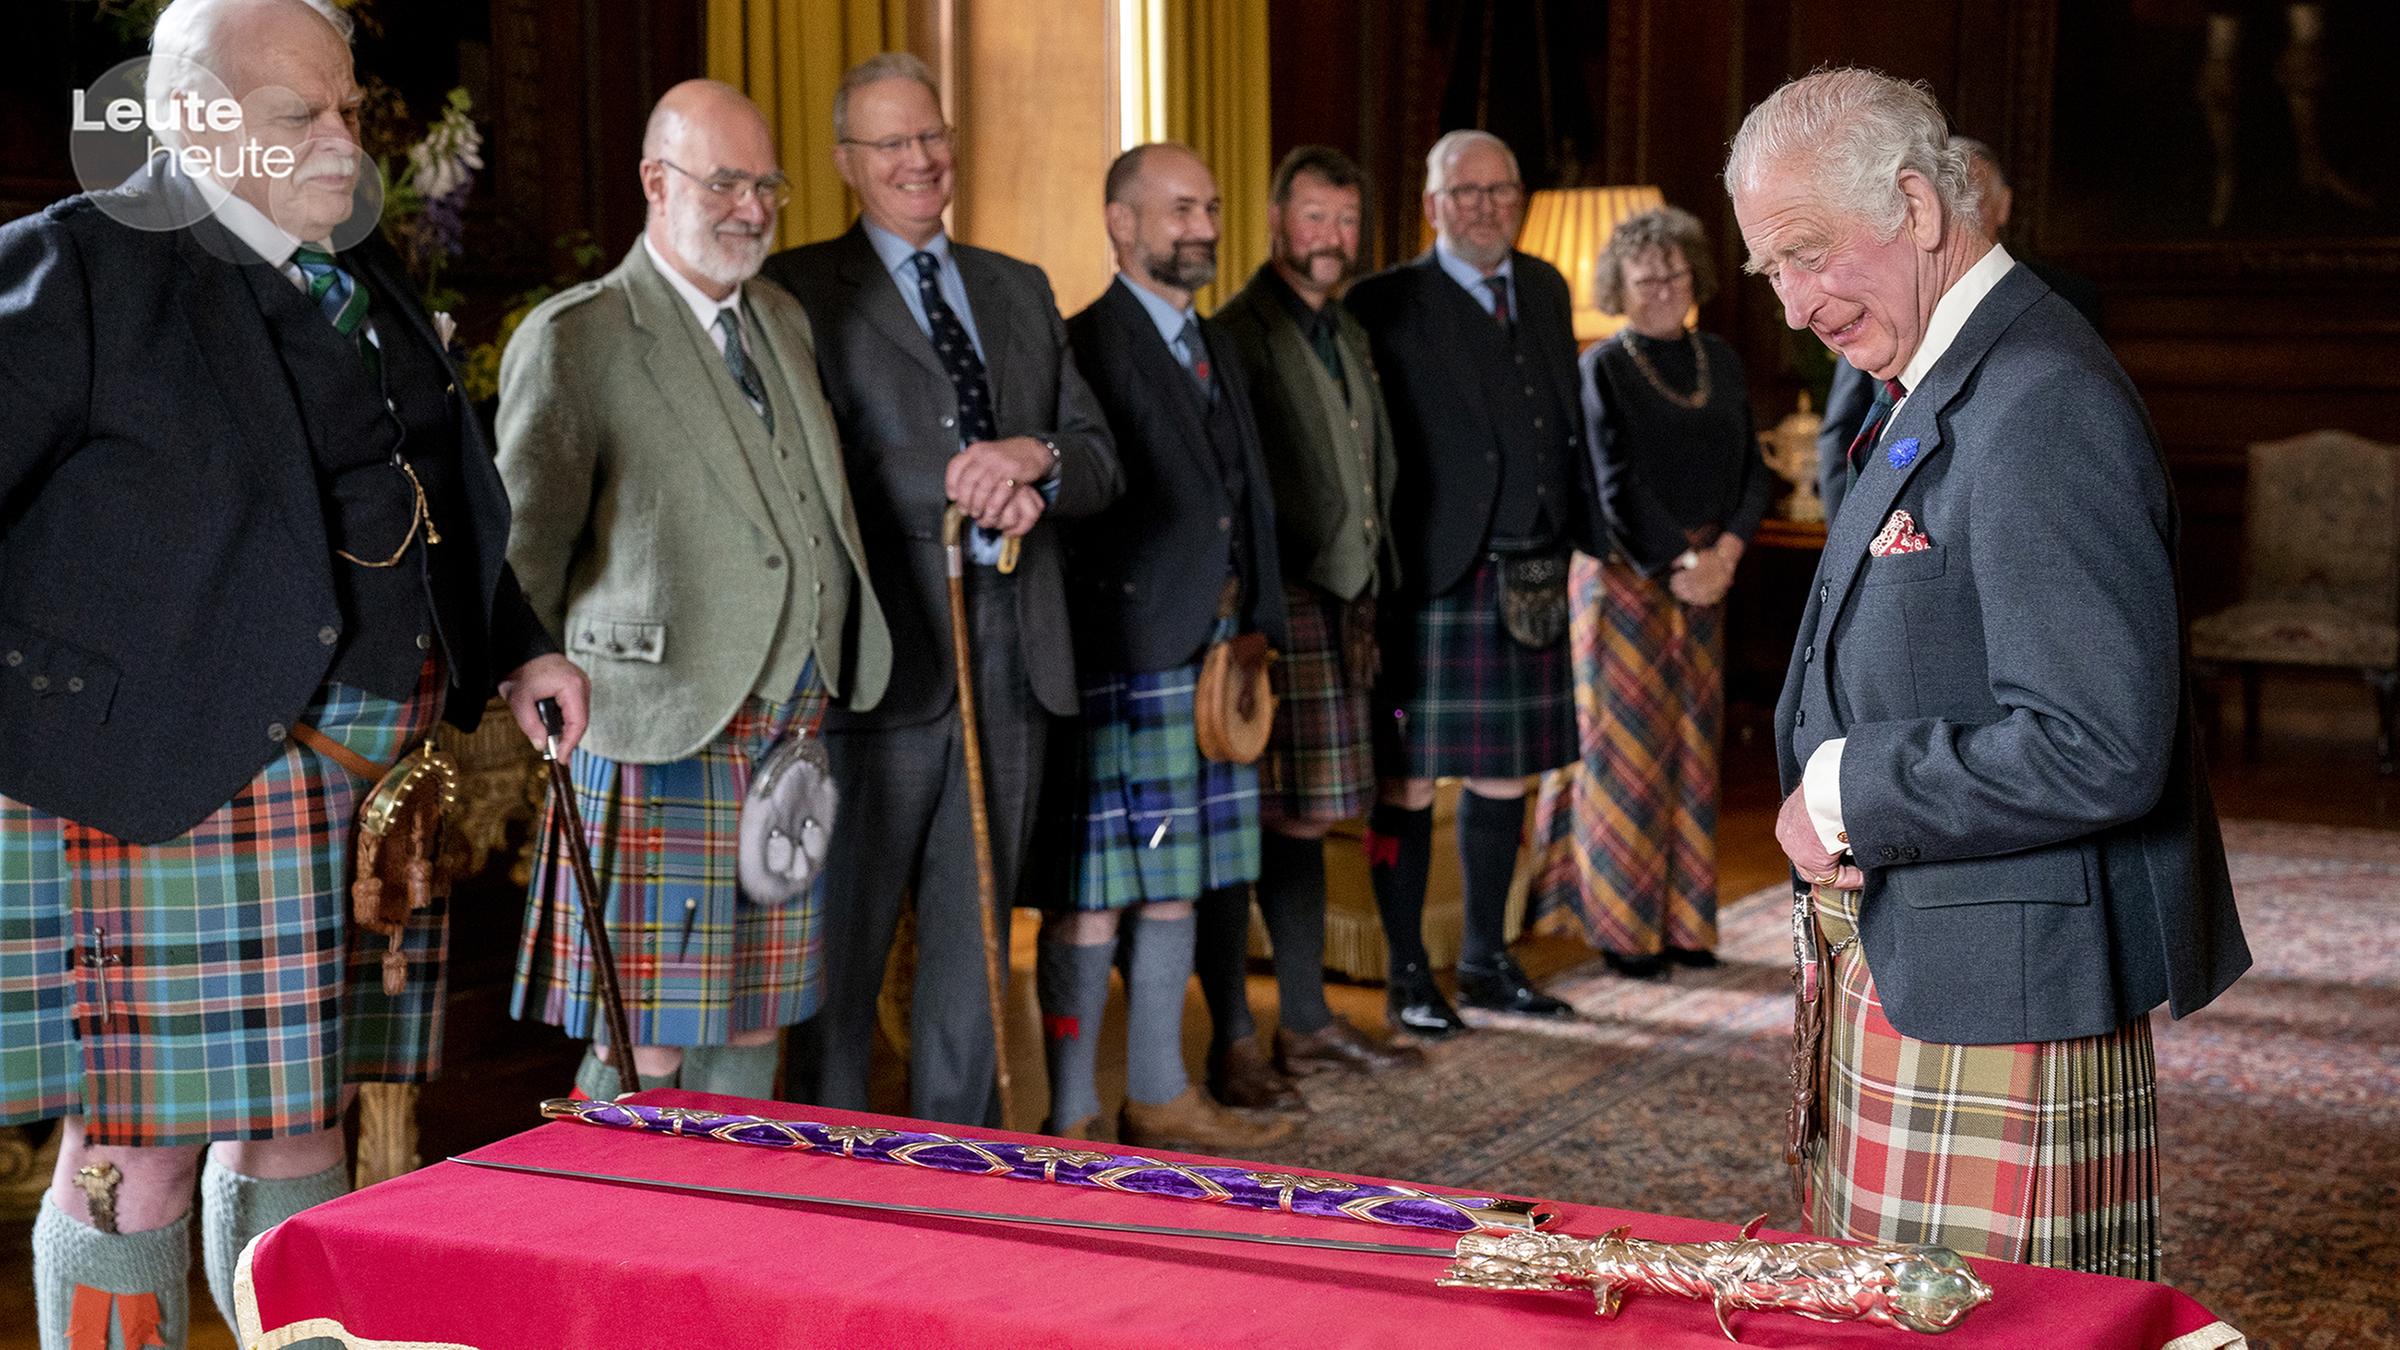 König Charles begutachtet das sogenannte Elisabeth-Schwert, das ihm morgen in einer Zeremonie in Schottland überreicht werden soll